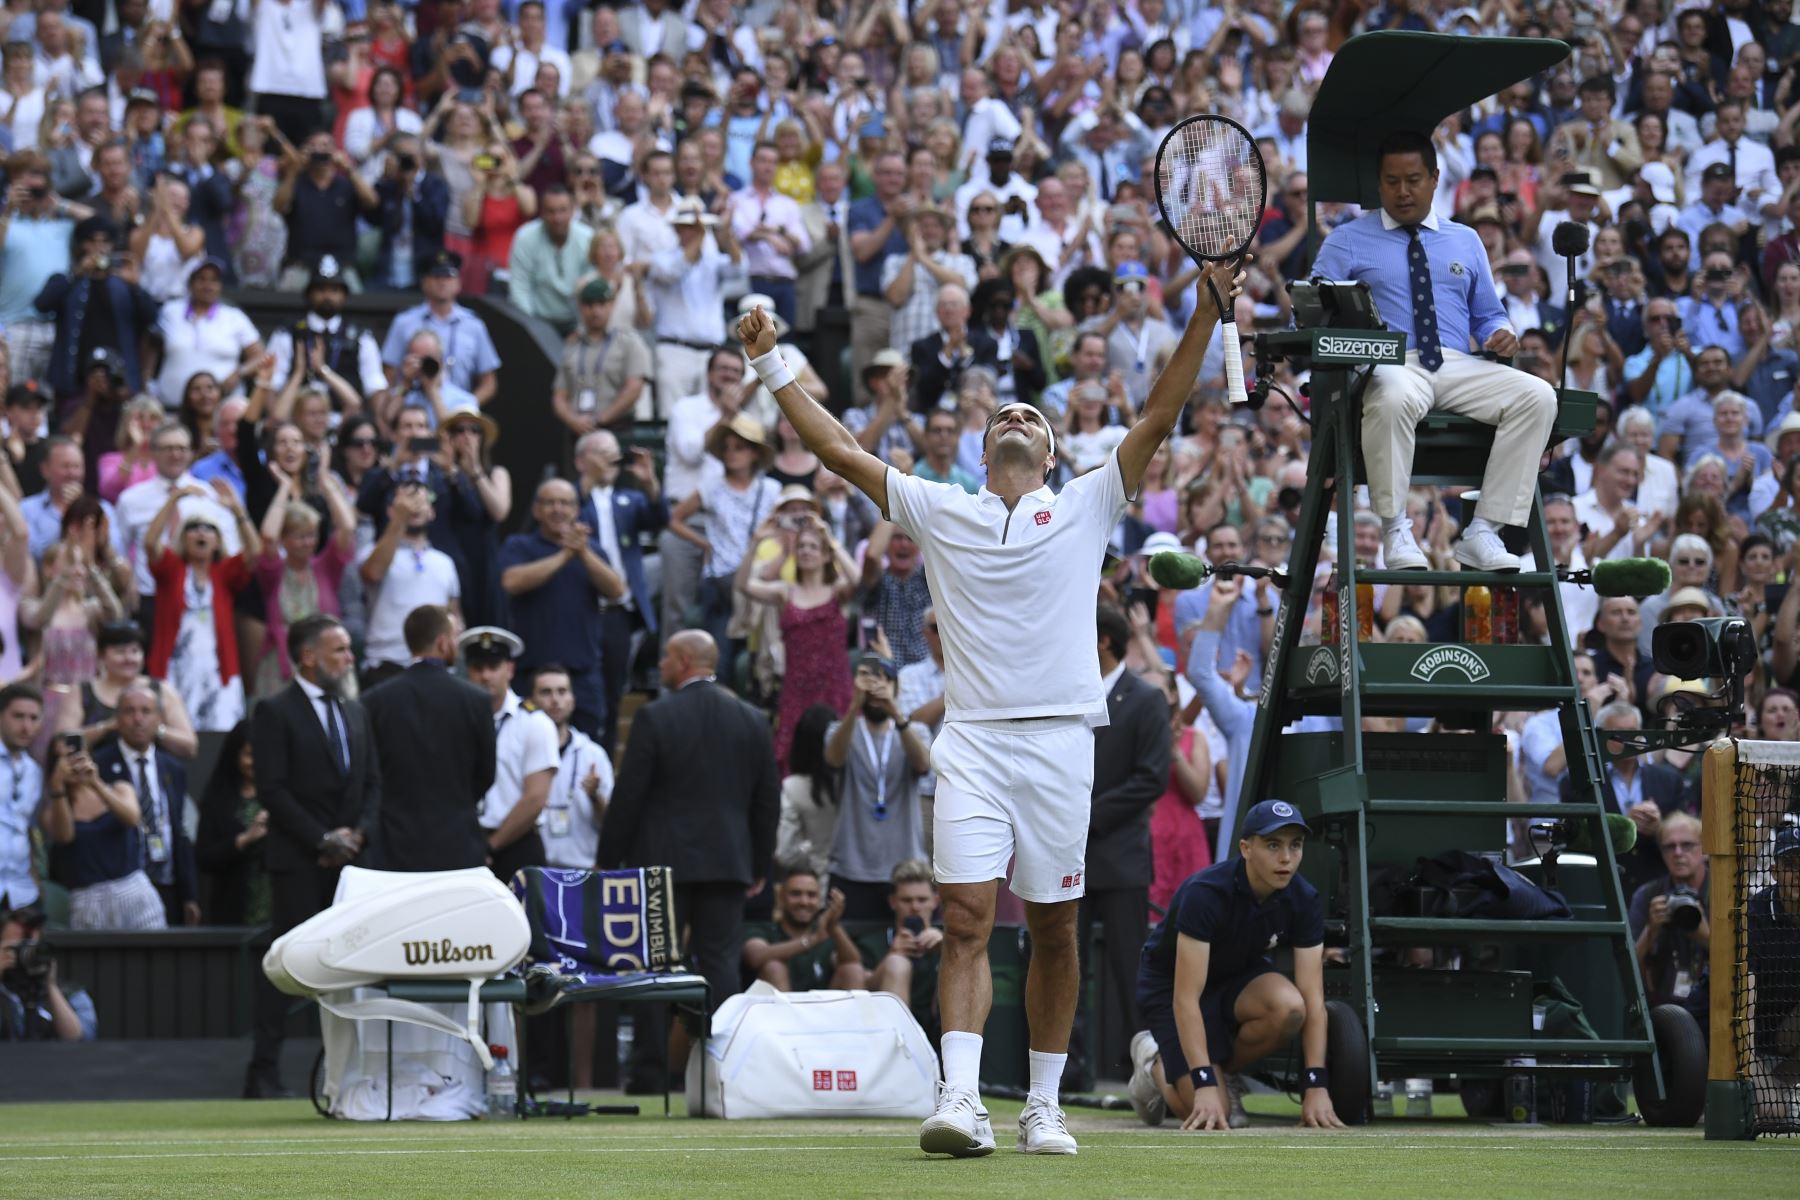 El suizo Roger Federer jugará la final de Wimbledon ante el serbio Novak Djokovic, luego de derrotar al español Rafael Nadal por 7-6 (3), 1-6, 6-3 y 6-4. Foto: AFP